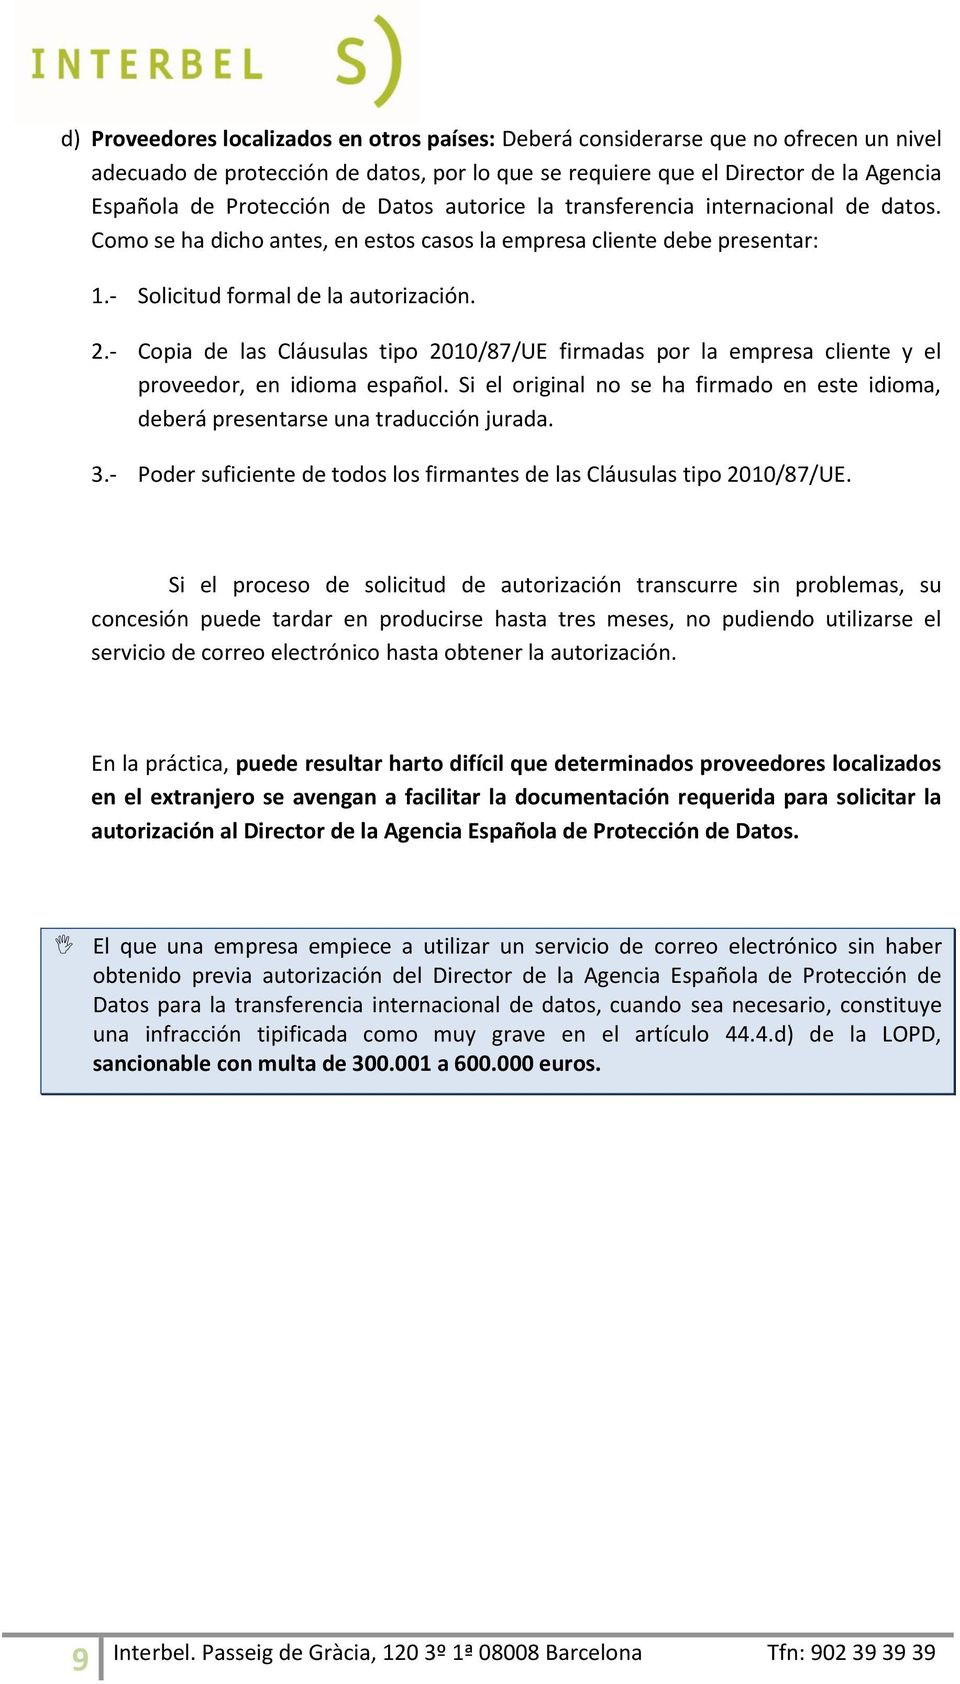 - Copia de las Cláusulas tipo 2010/87/UE firmadas por la empresa cliente y el proveedor, en idioma español. Si el original no se ha firmado en este idioma, deberá presentarse una traducción jurada. 3.